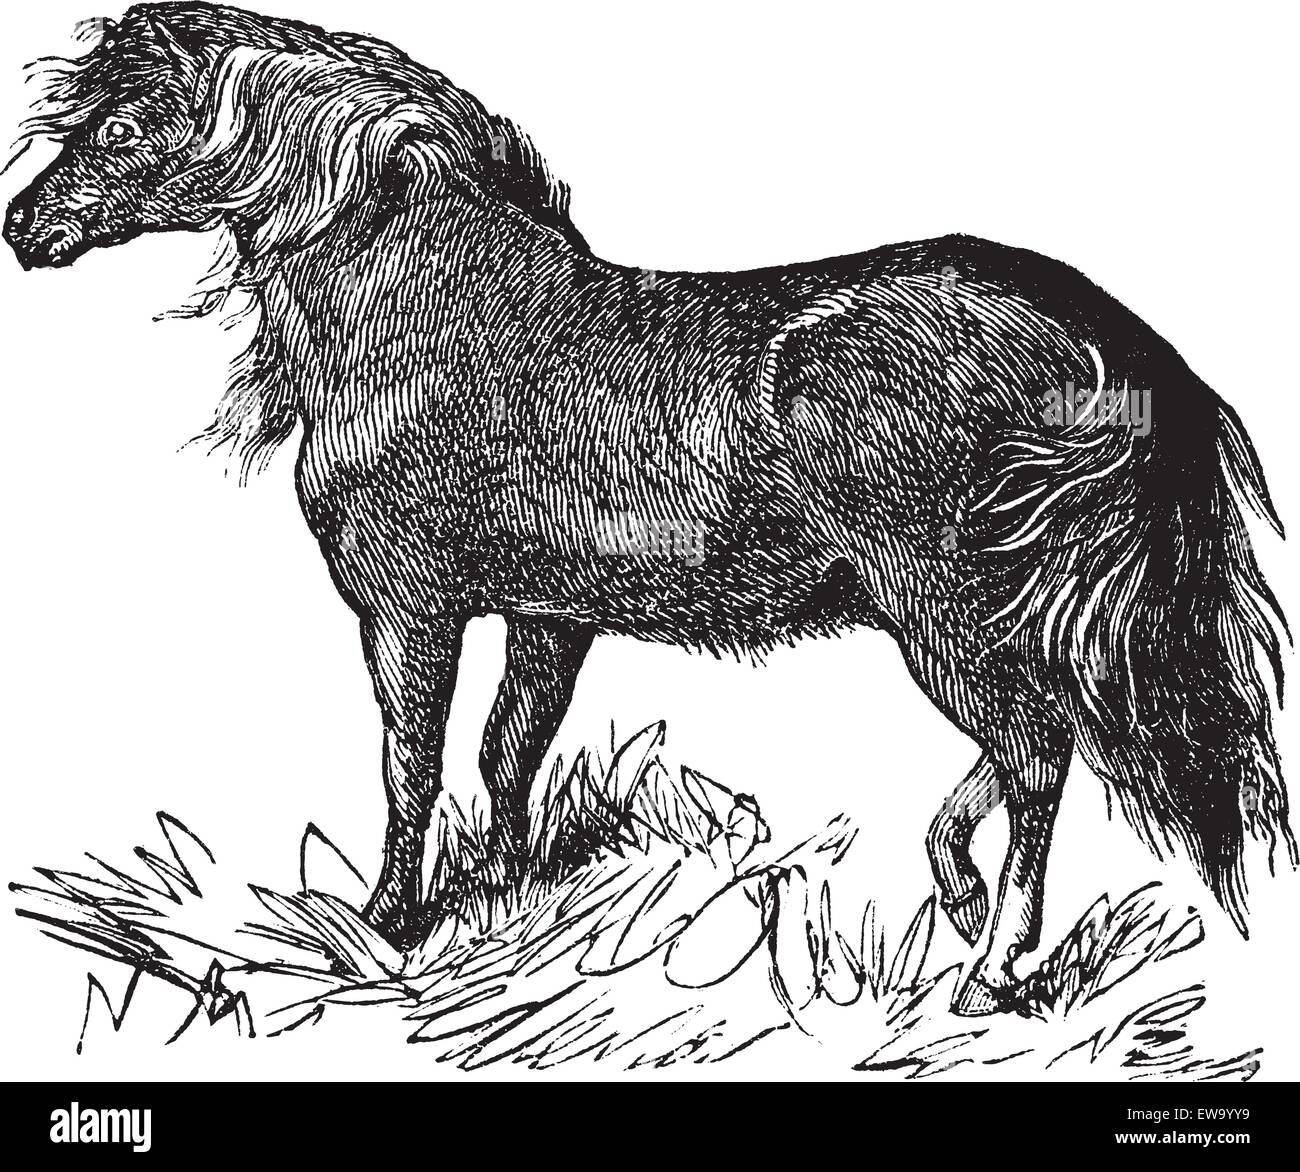 Poney Shetland ou Equus ferus caballus, gravure d'époque. Vieille illustration gravée d'un poney Shetland. Illustration de Vecteur